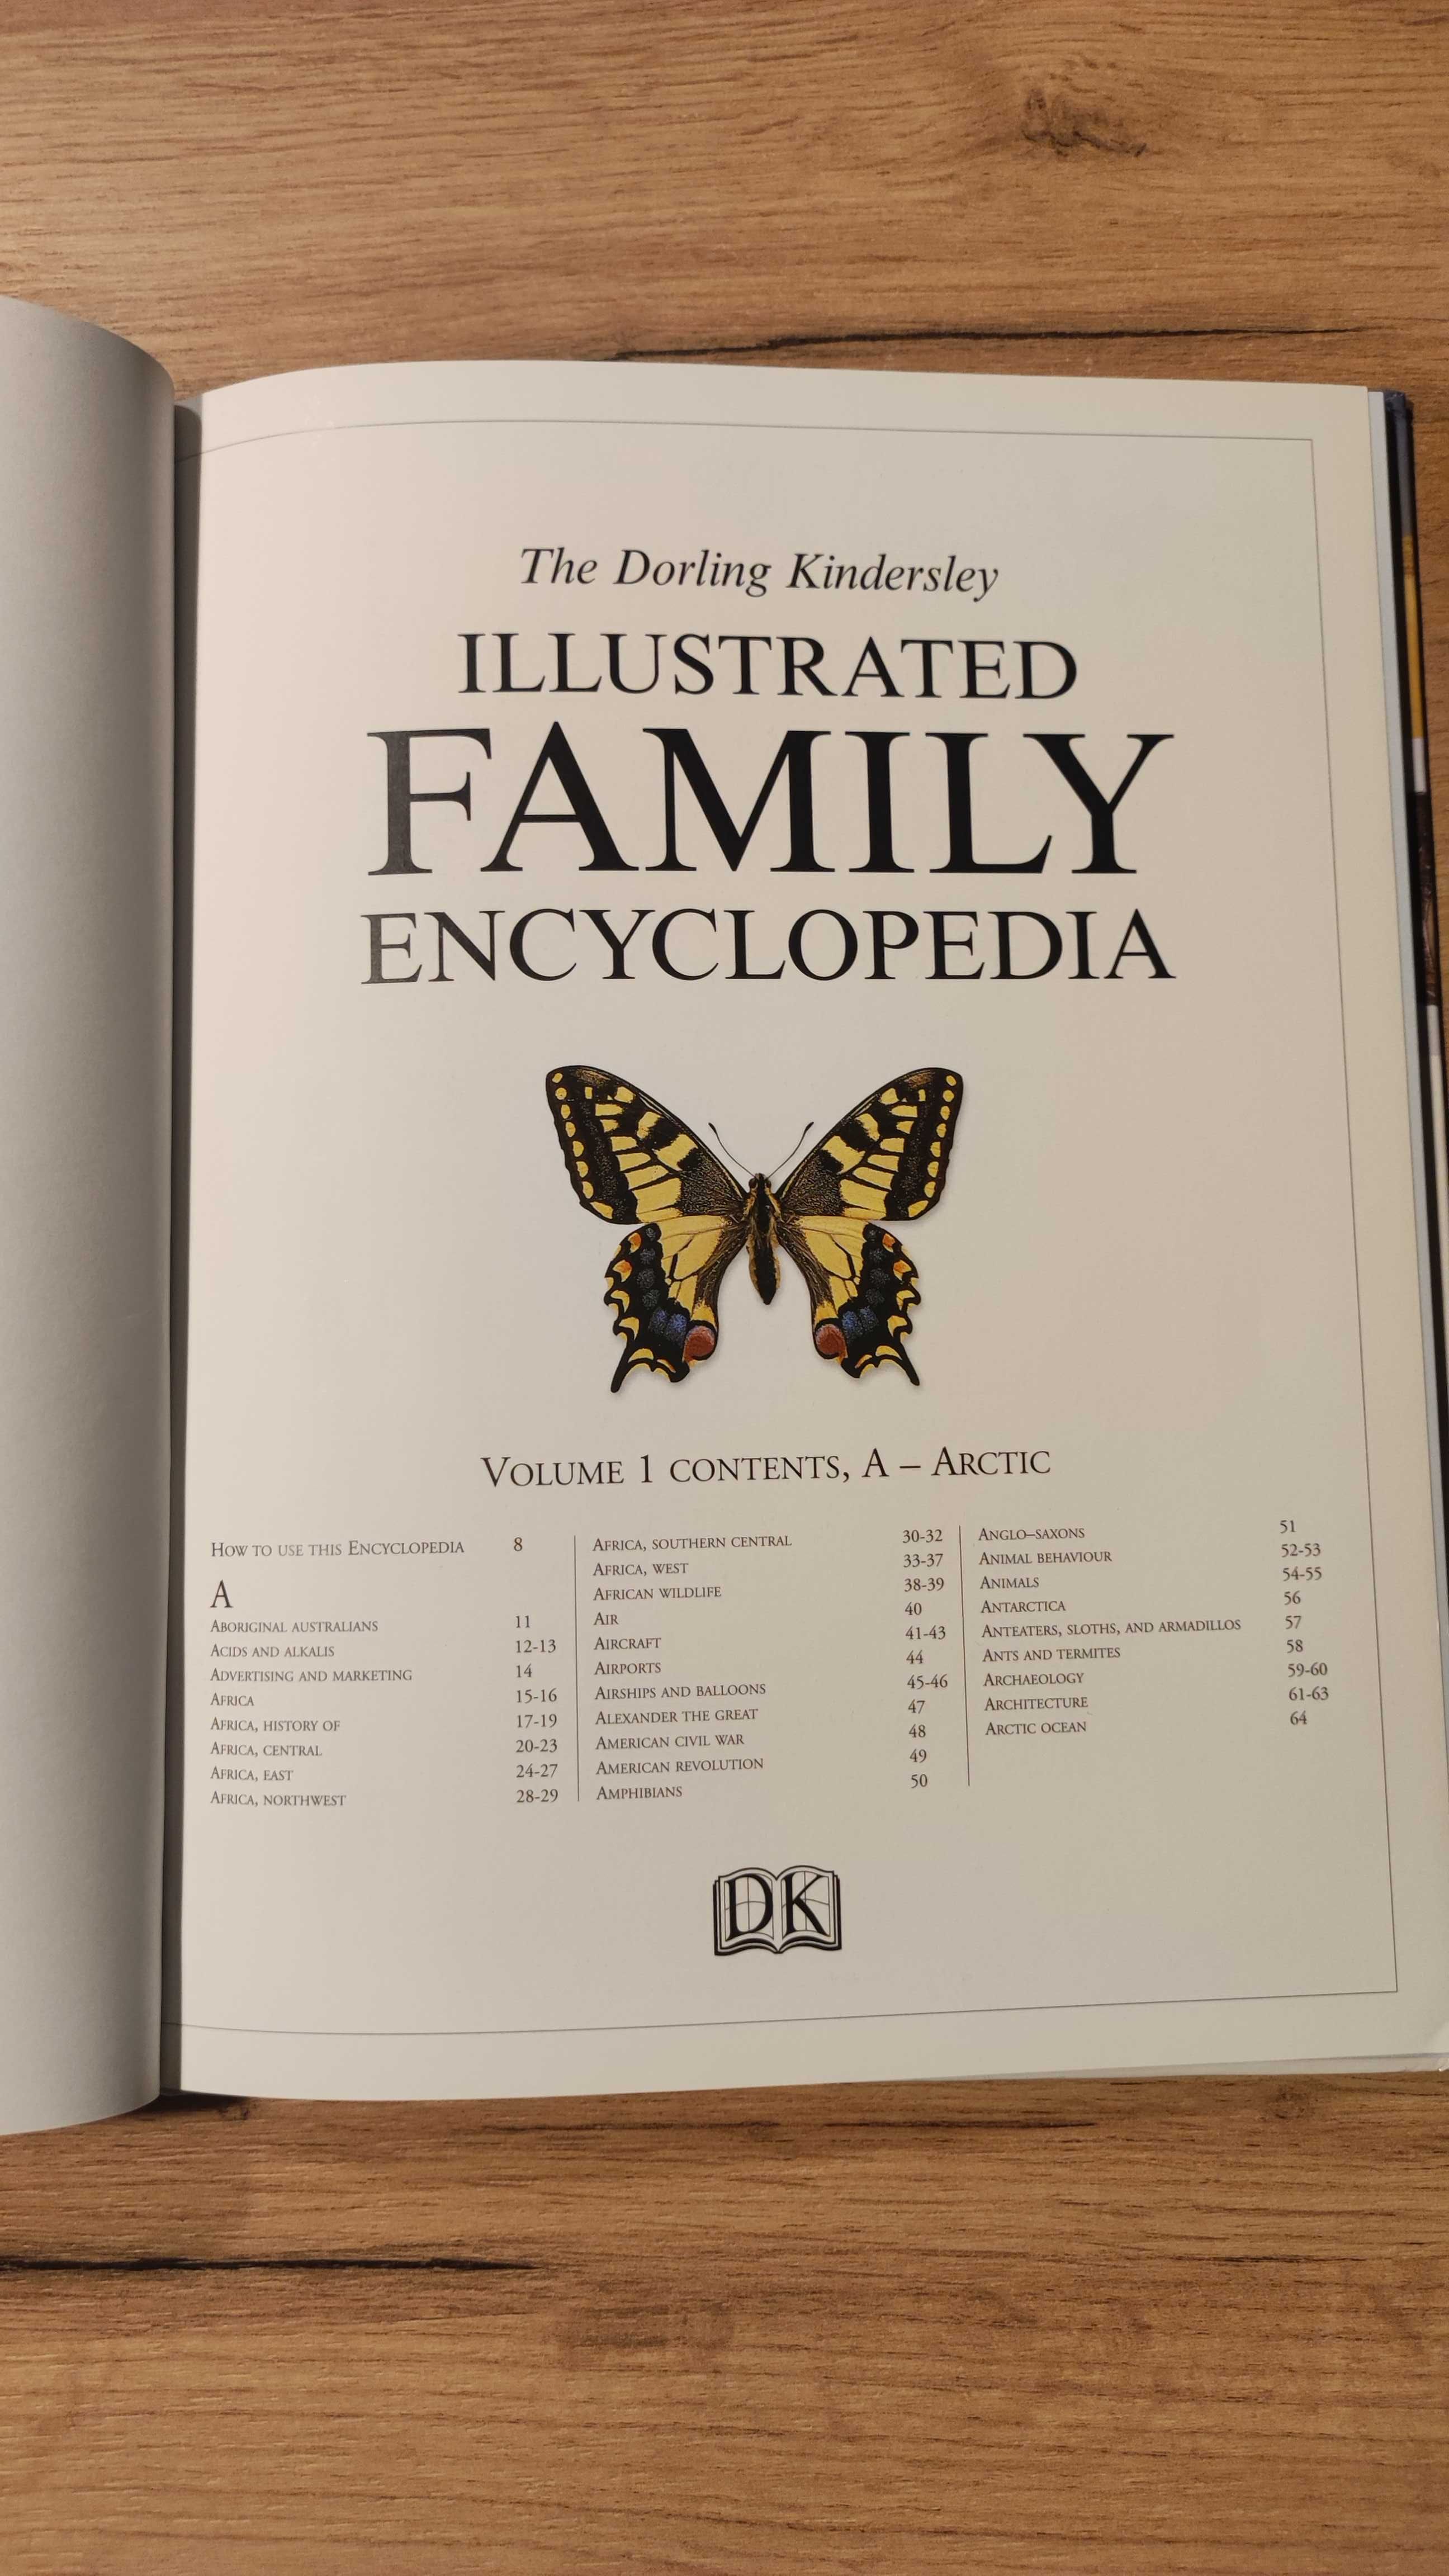 Family encyklopedia